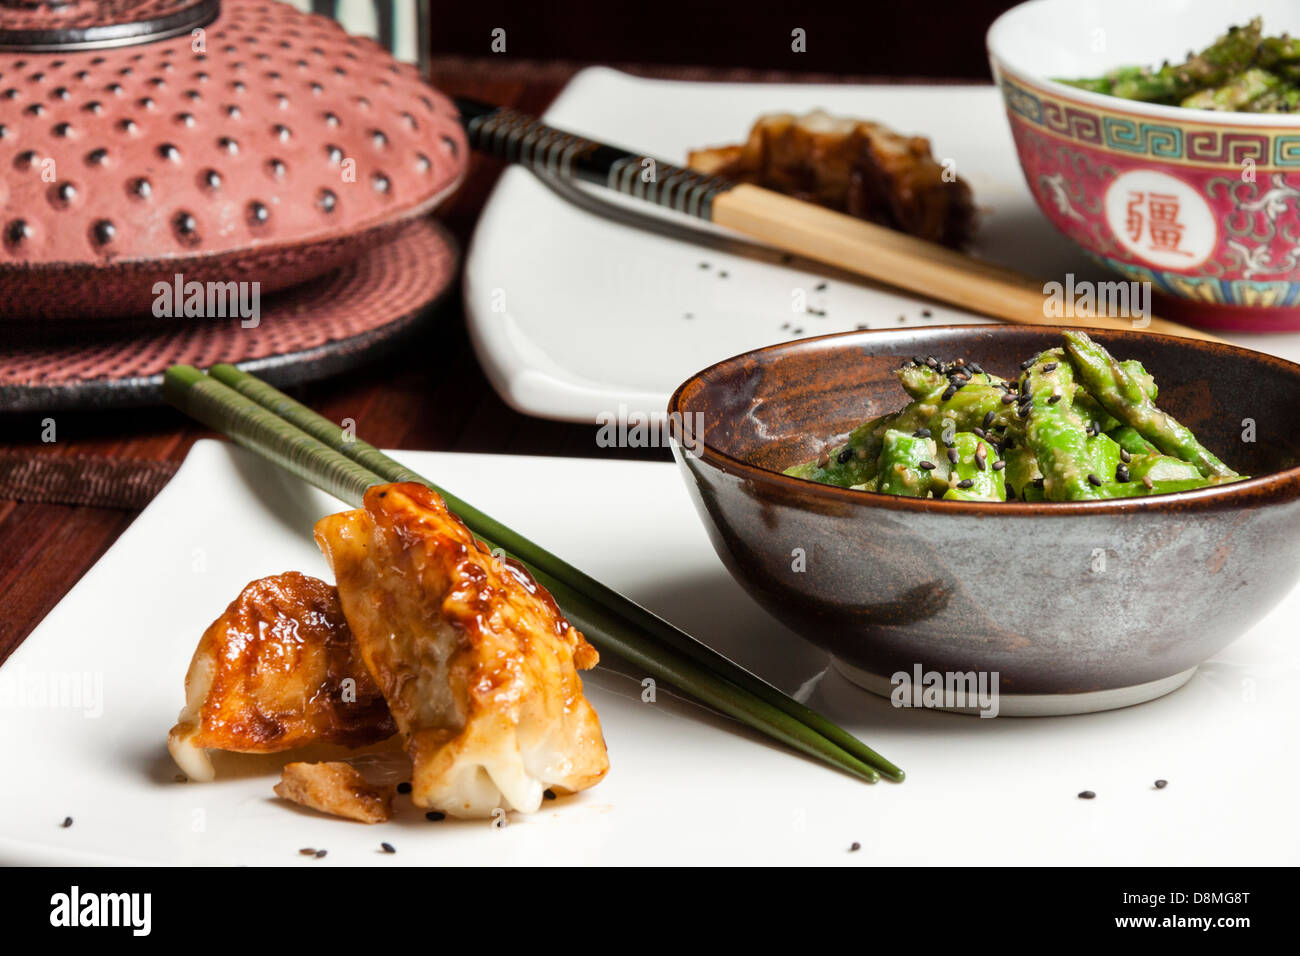 Les Asperges Salade sésame, de style japonais, avec pot de thé japonaise et potstickers, horizontal Banque D'Images